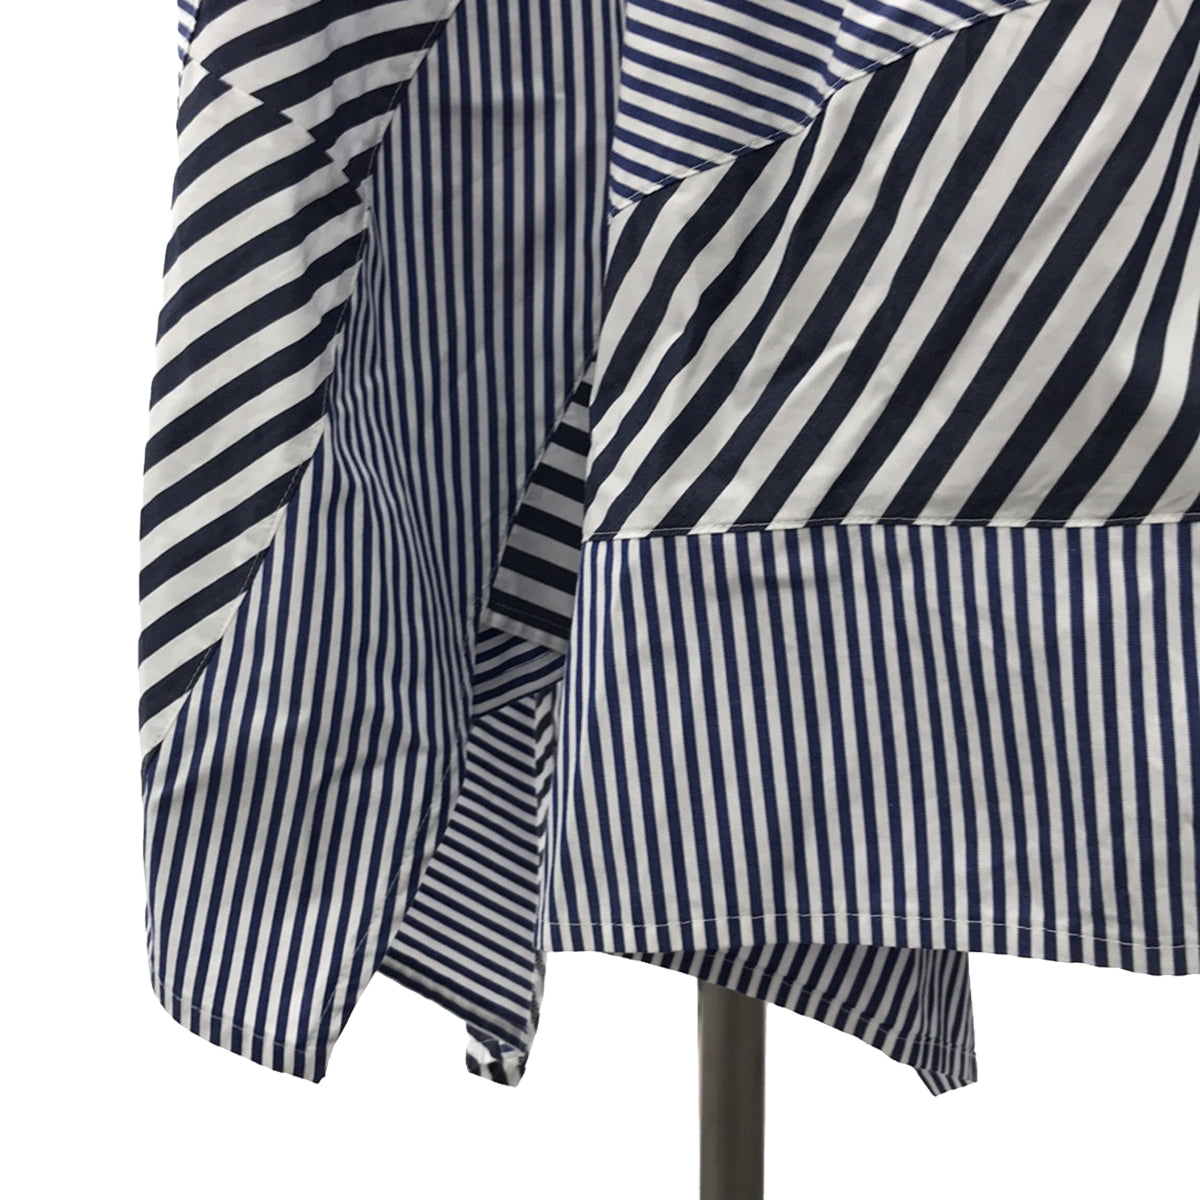 tricot COMME des GARCONS AD2018 スカート